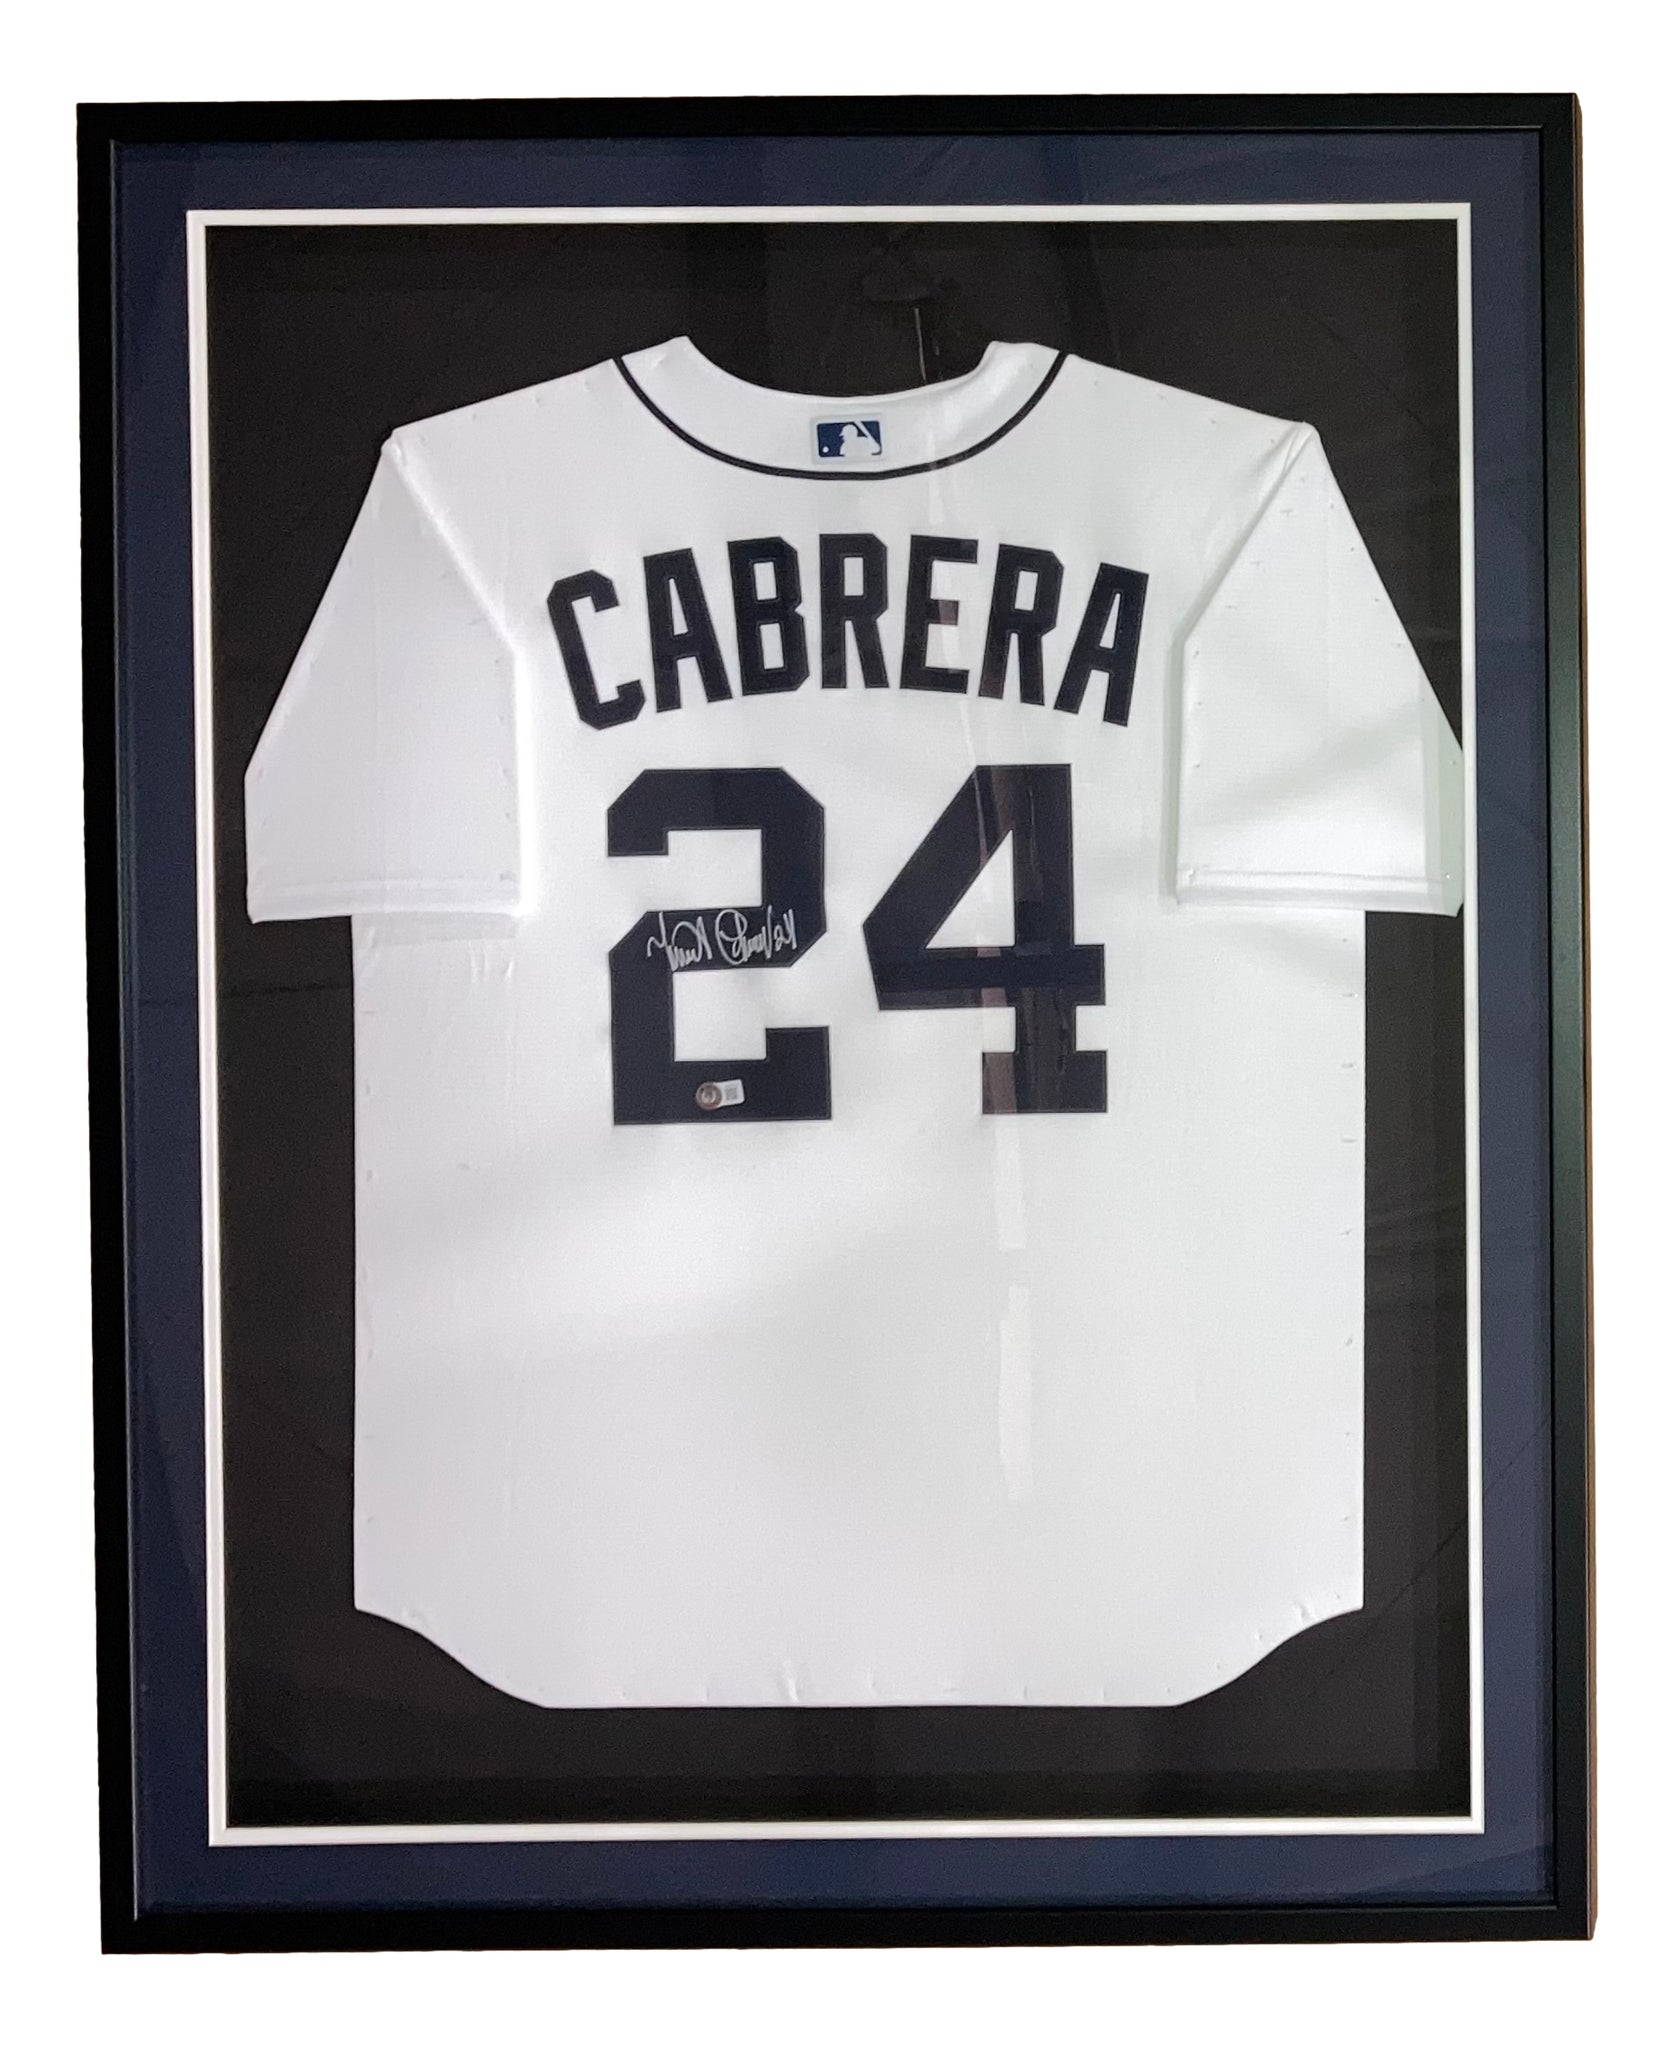 MLB Miguel Cabrera Signed Jerseys, Collectible Miguel Cabrera